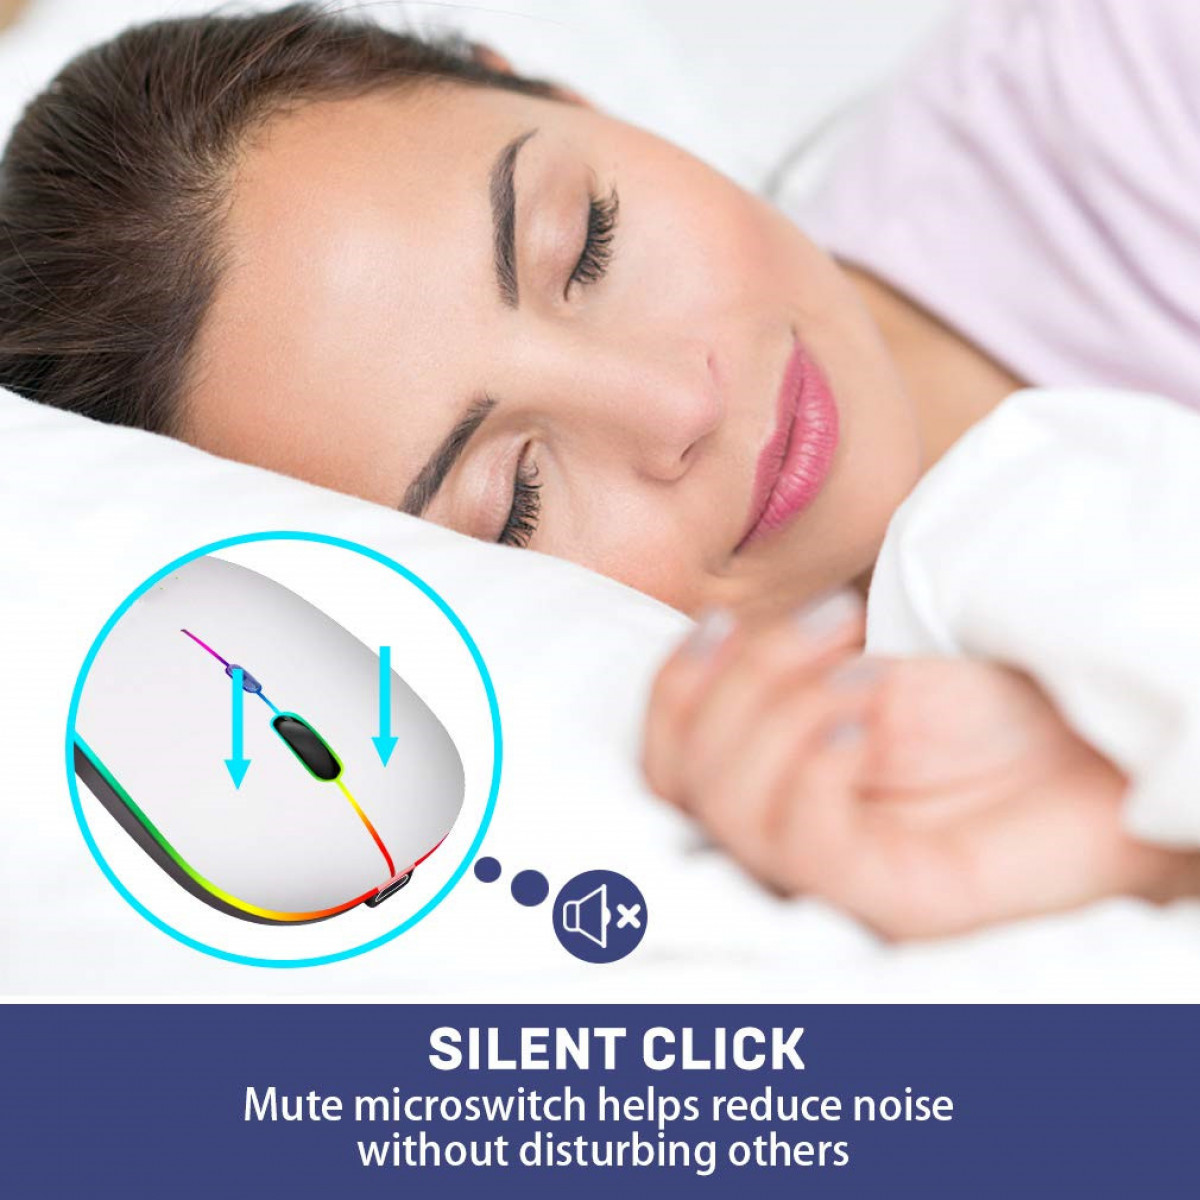 Kabellose Maus RGB-LED-Dual-Mode-Bluetooth/WLAN silber Maus, INF mit